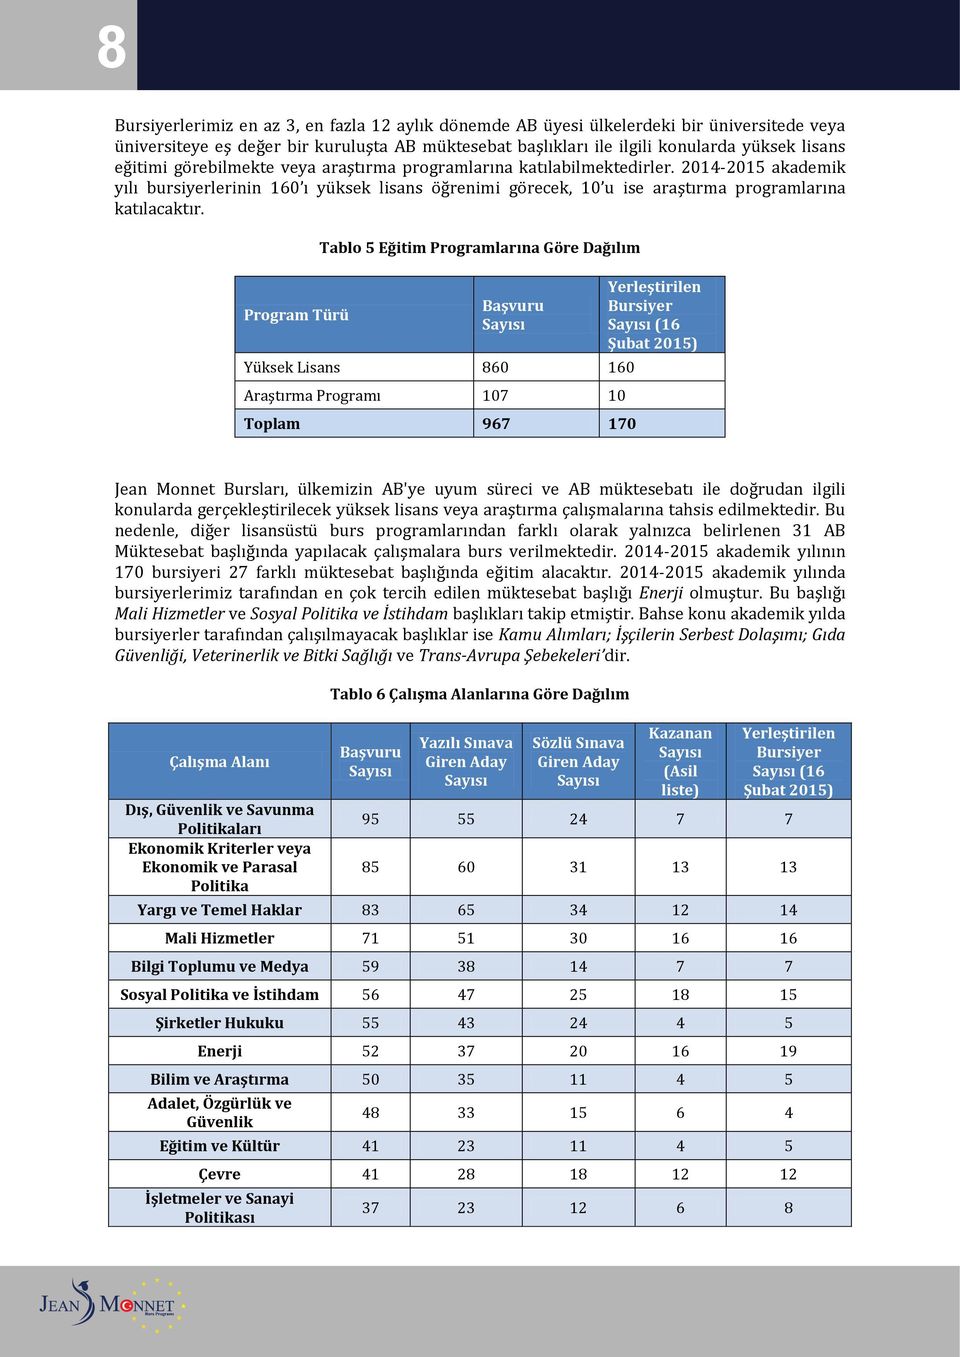 Program Türü Tablo 5 Eğitim Programlarına Göre Dağılım Başvuru Yüksek Lisans 860 160 Araştırma Programı 107 10 Toplam 967 170 Yerleştirilen Bursiyer (16 Şubat 2015) Jean Monnet Bursları, ülkemizin